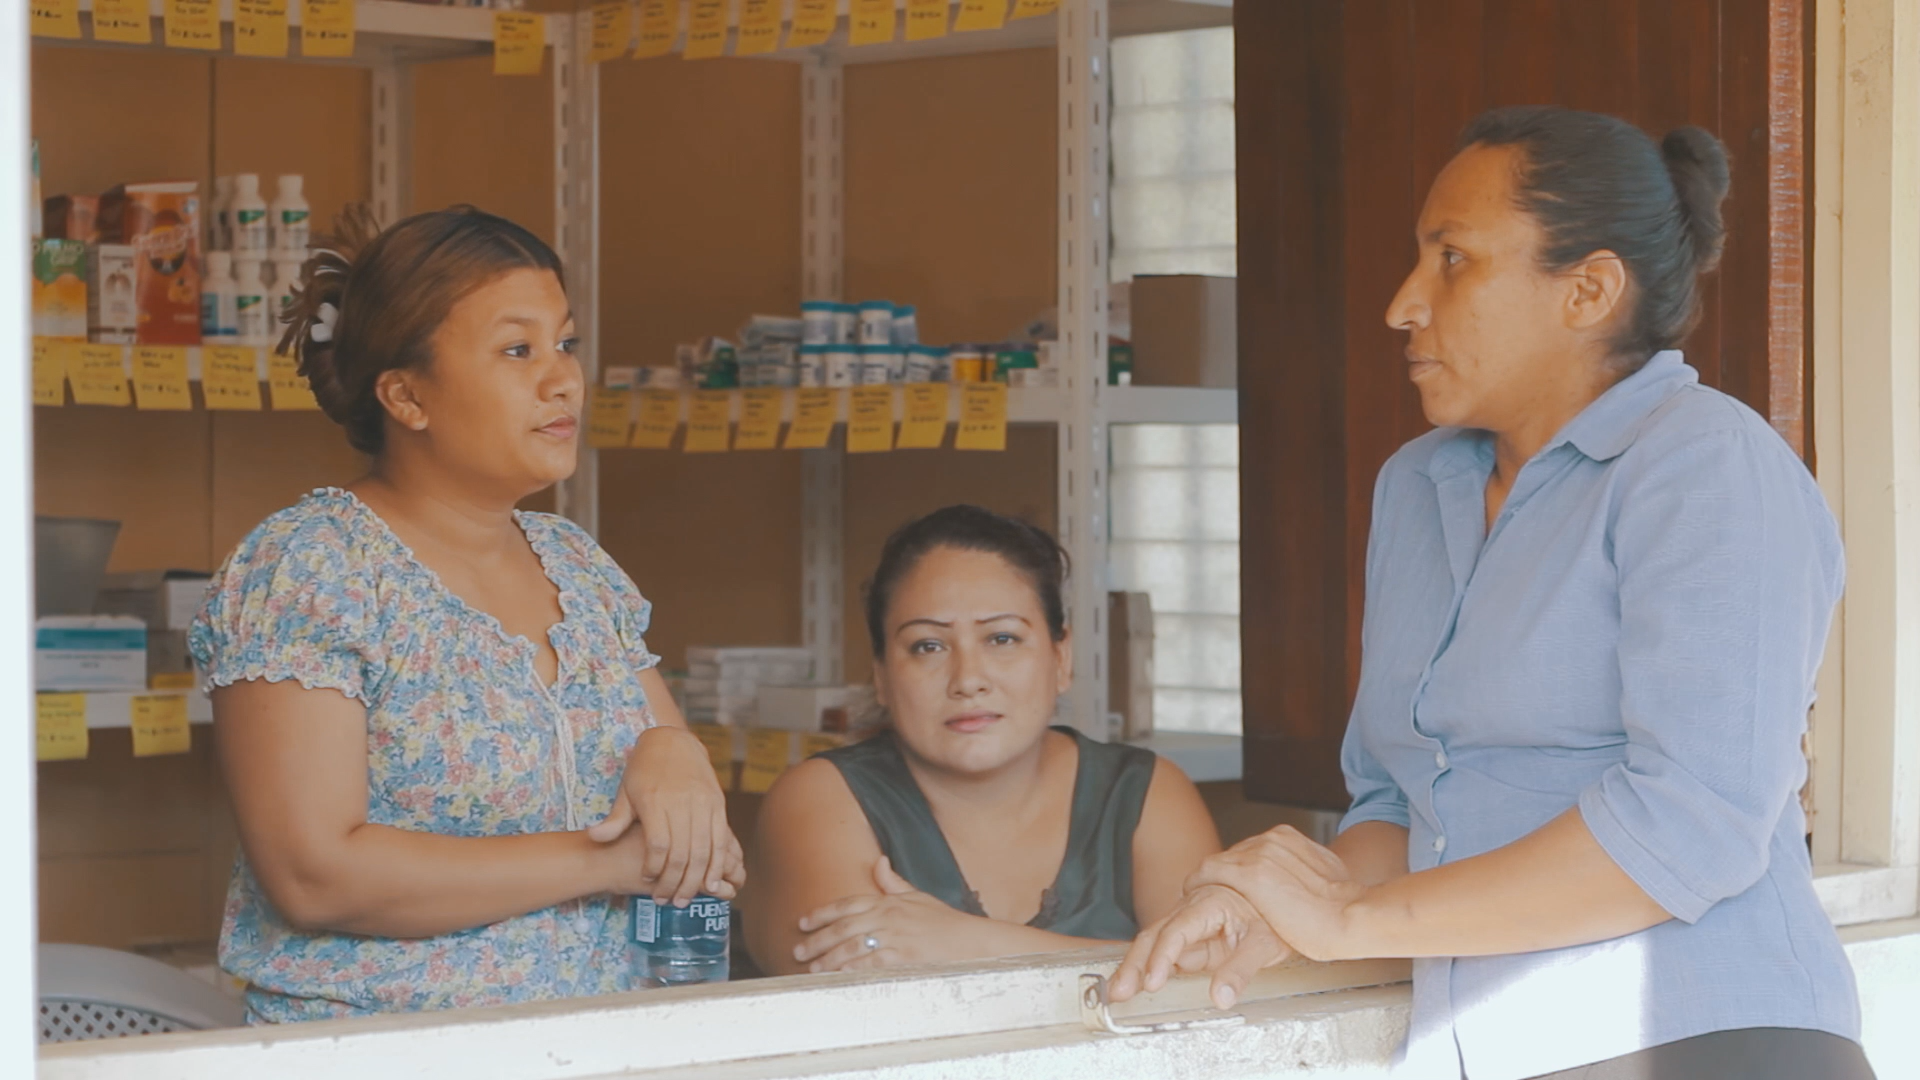 Estrenamos en Euskadi el documental ‘La salud en mi comunidad’